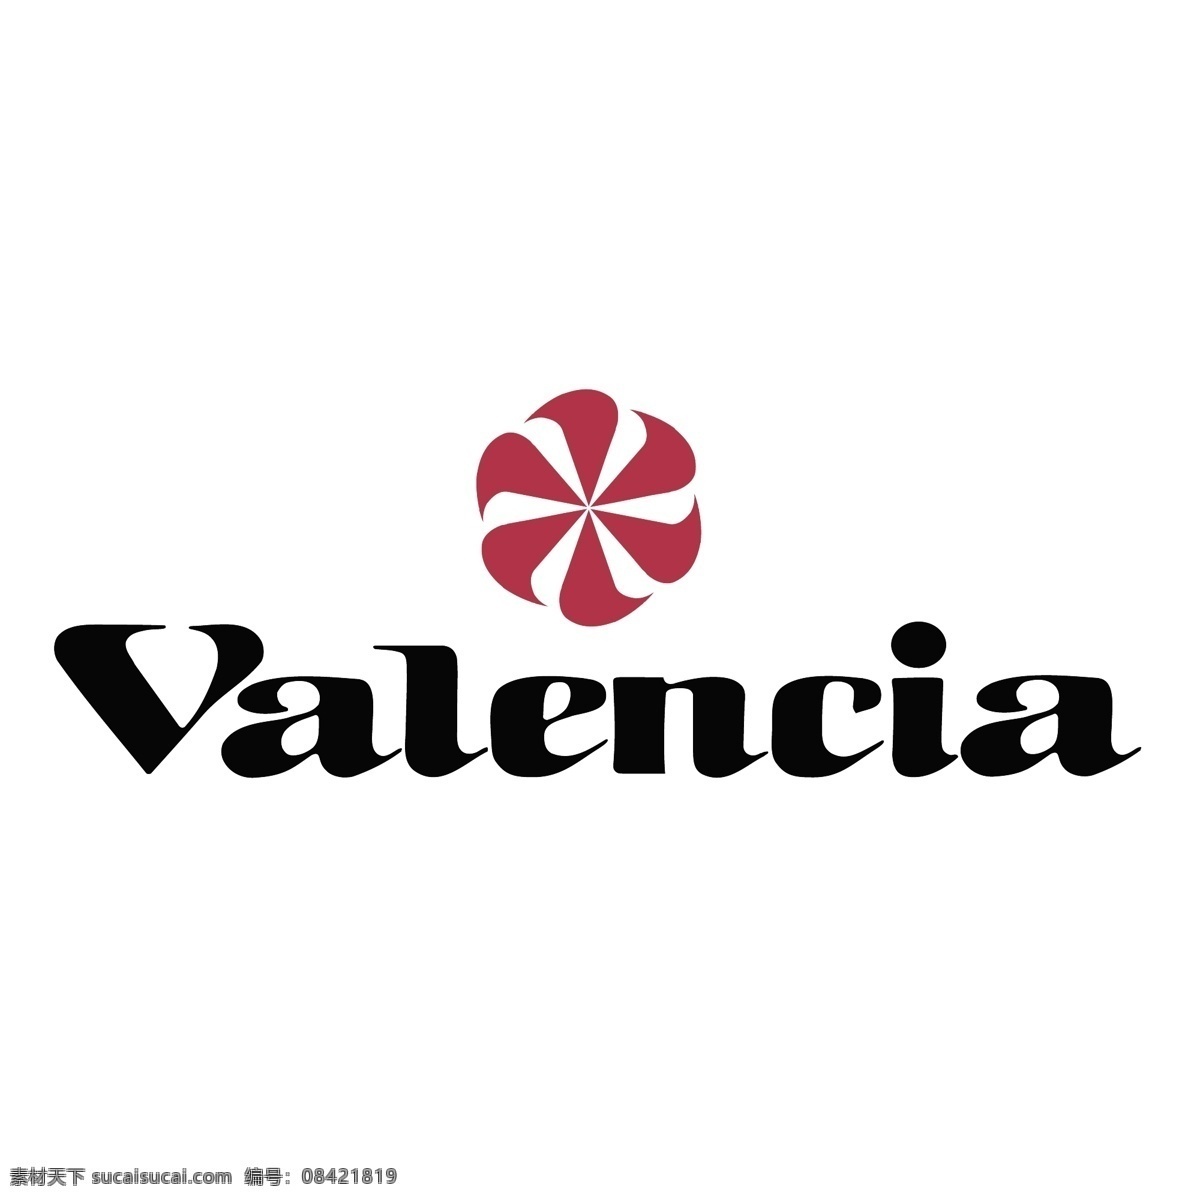 瓦伦西亚 足球 俱乐部 自由 标志 免费 psd源文件 logo设计